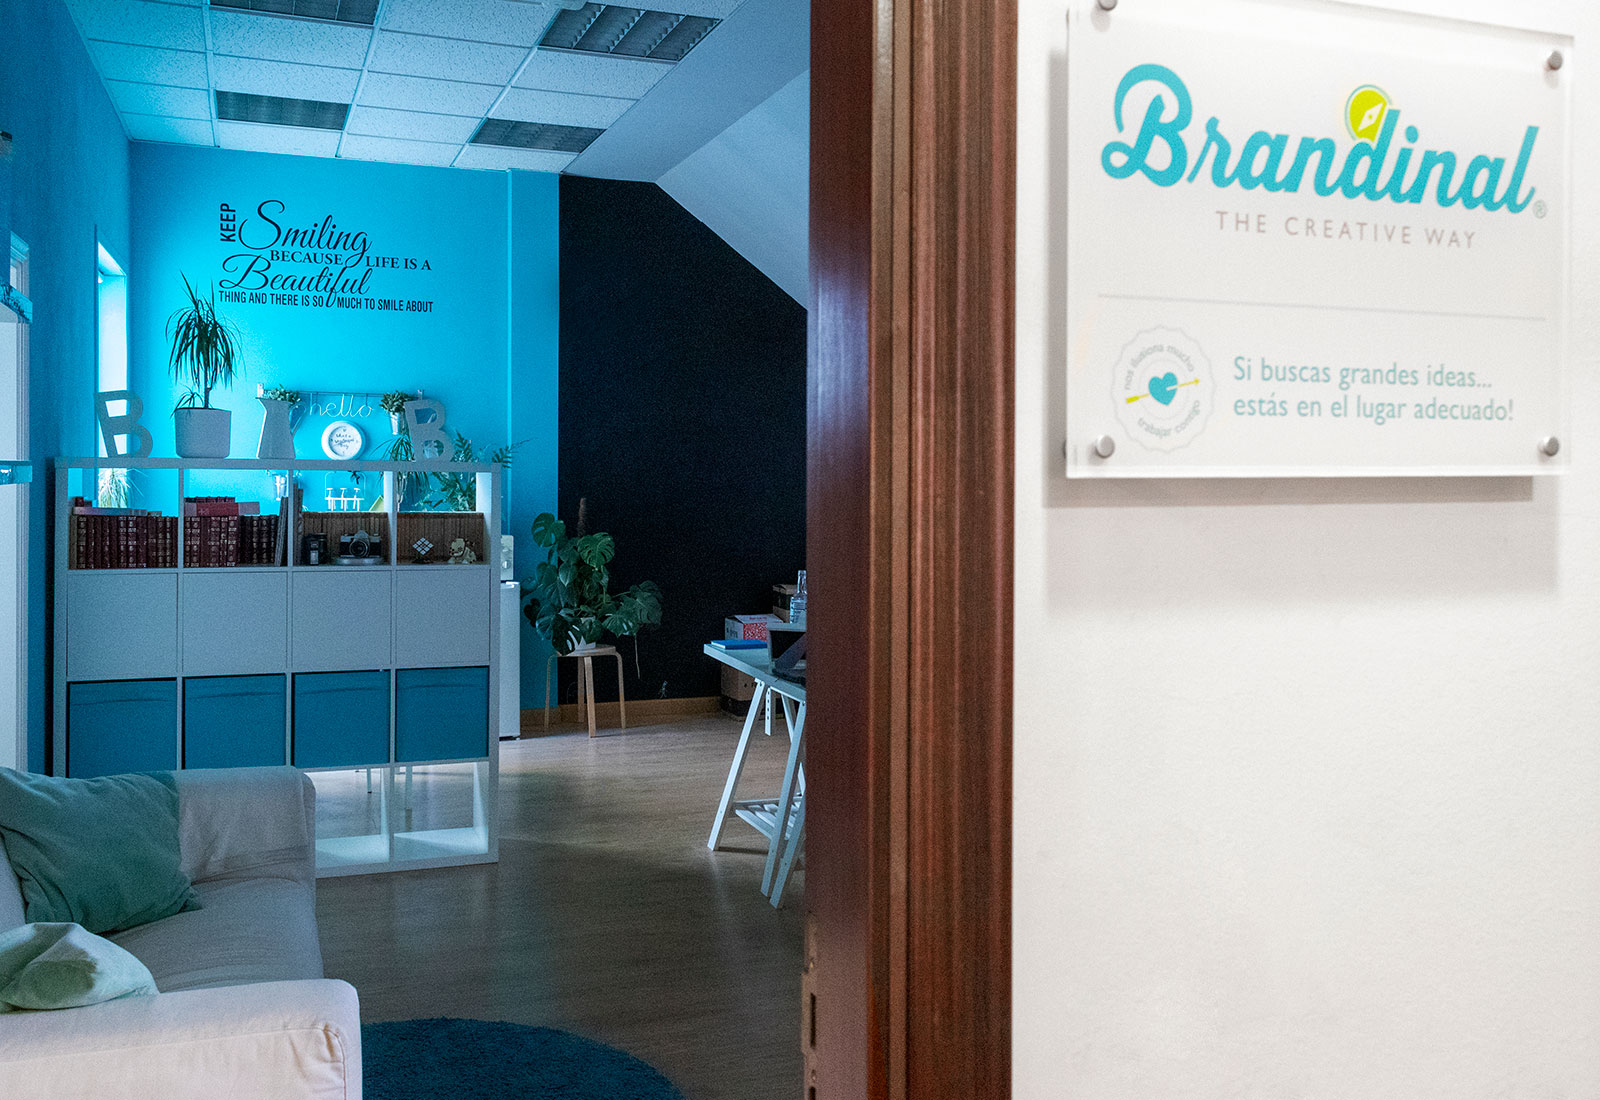 Agencia de Marketing, Publicidad y Branding en Vigo - Brandinal